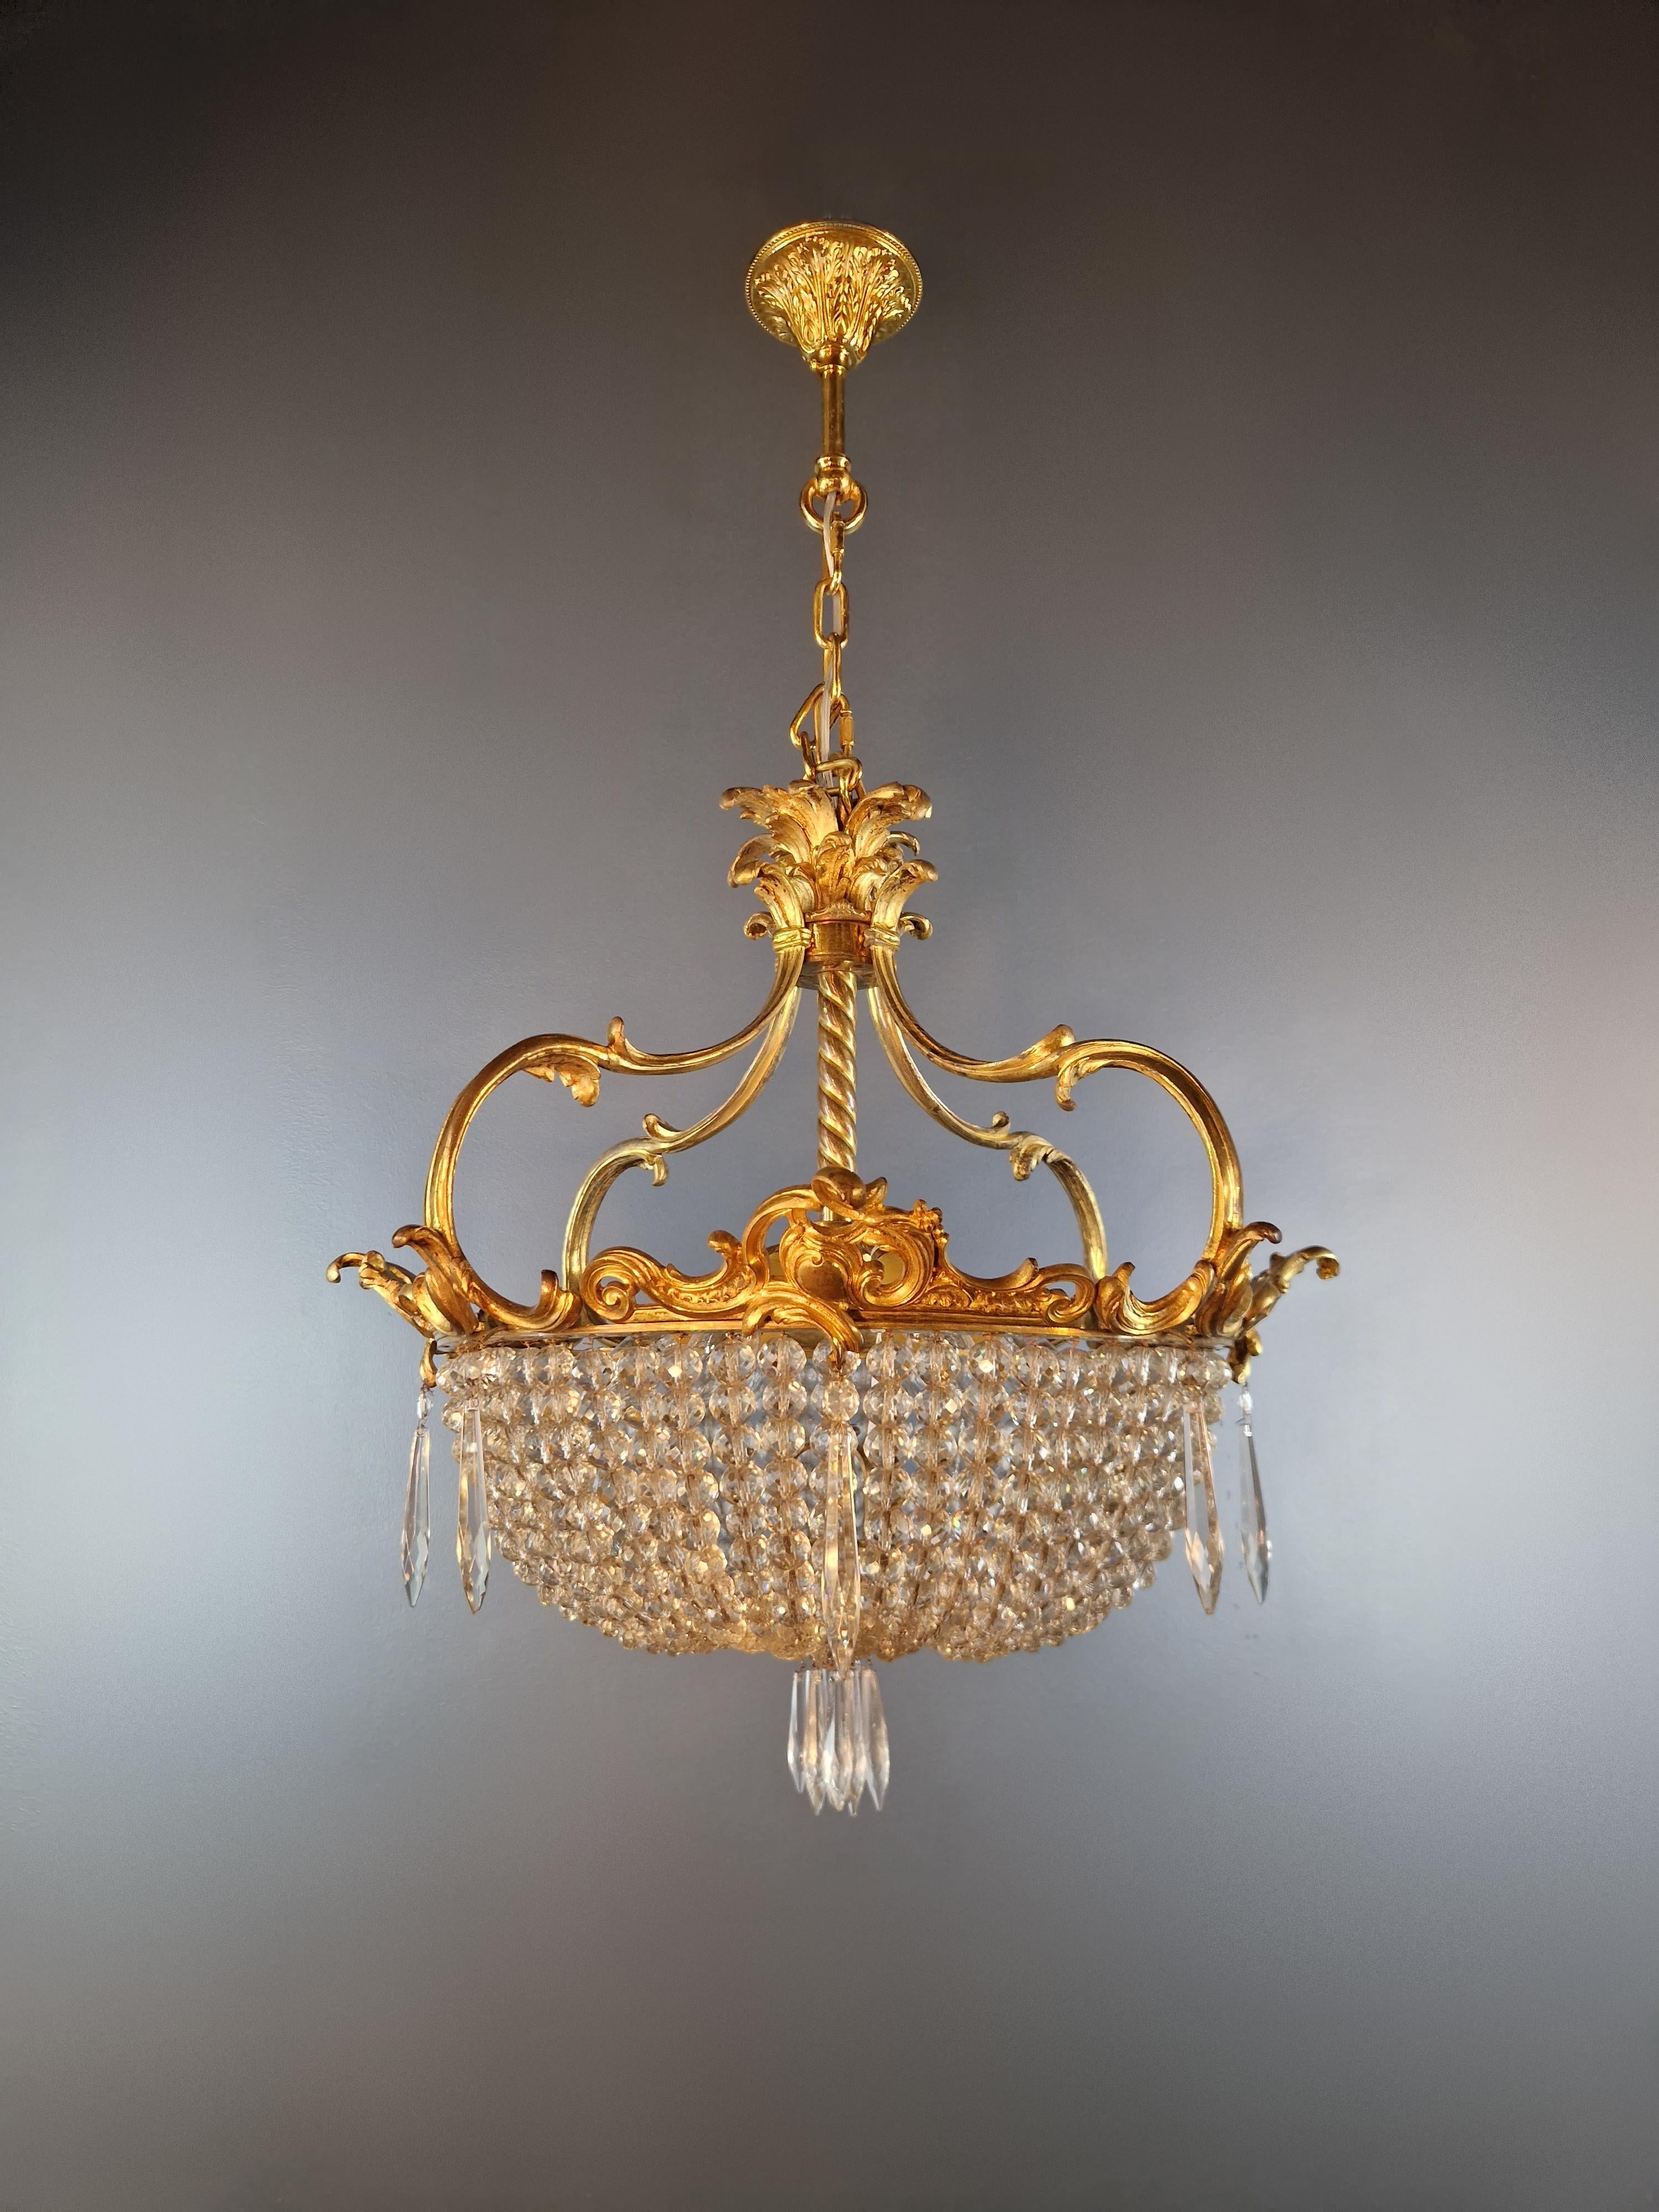 Italian Art Nouveau Brass Chandelier Lustre Ceiling Lamp Rarity Antique